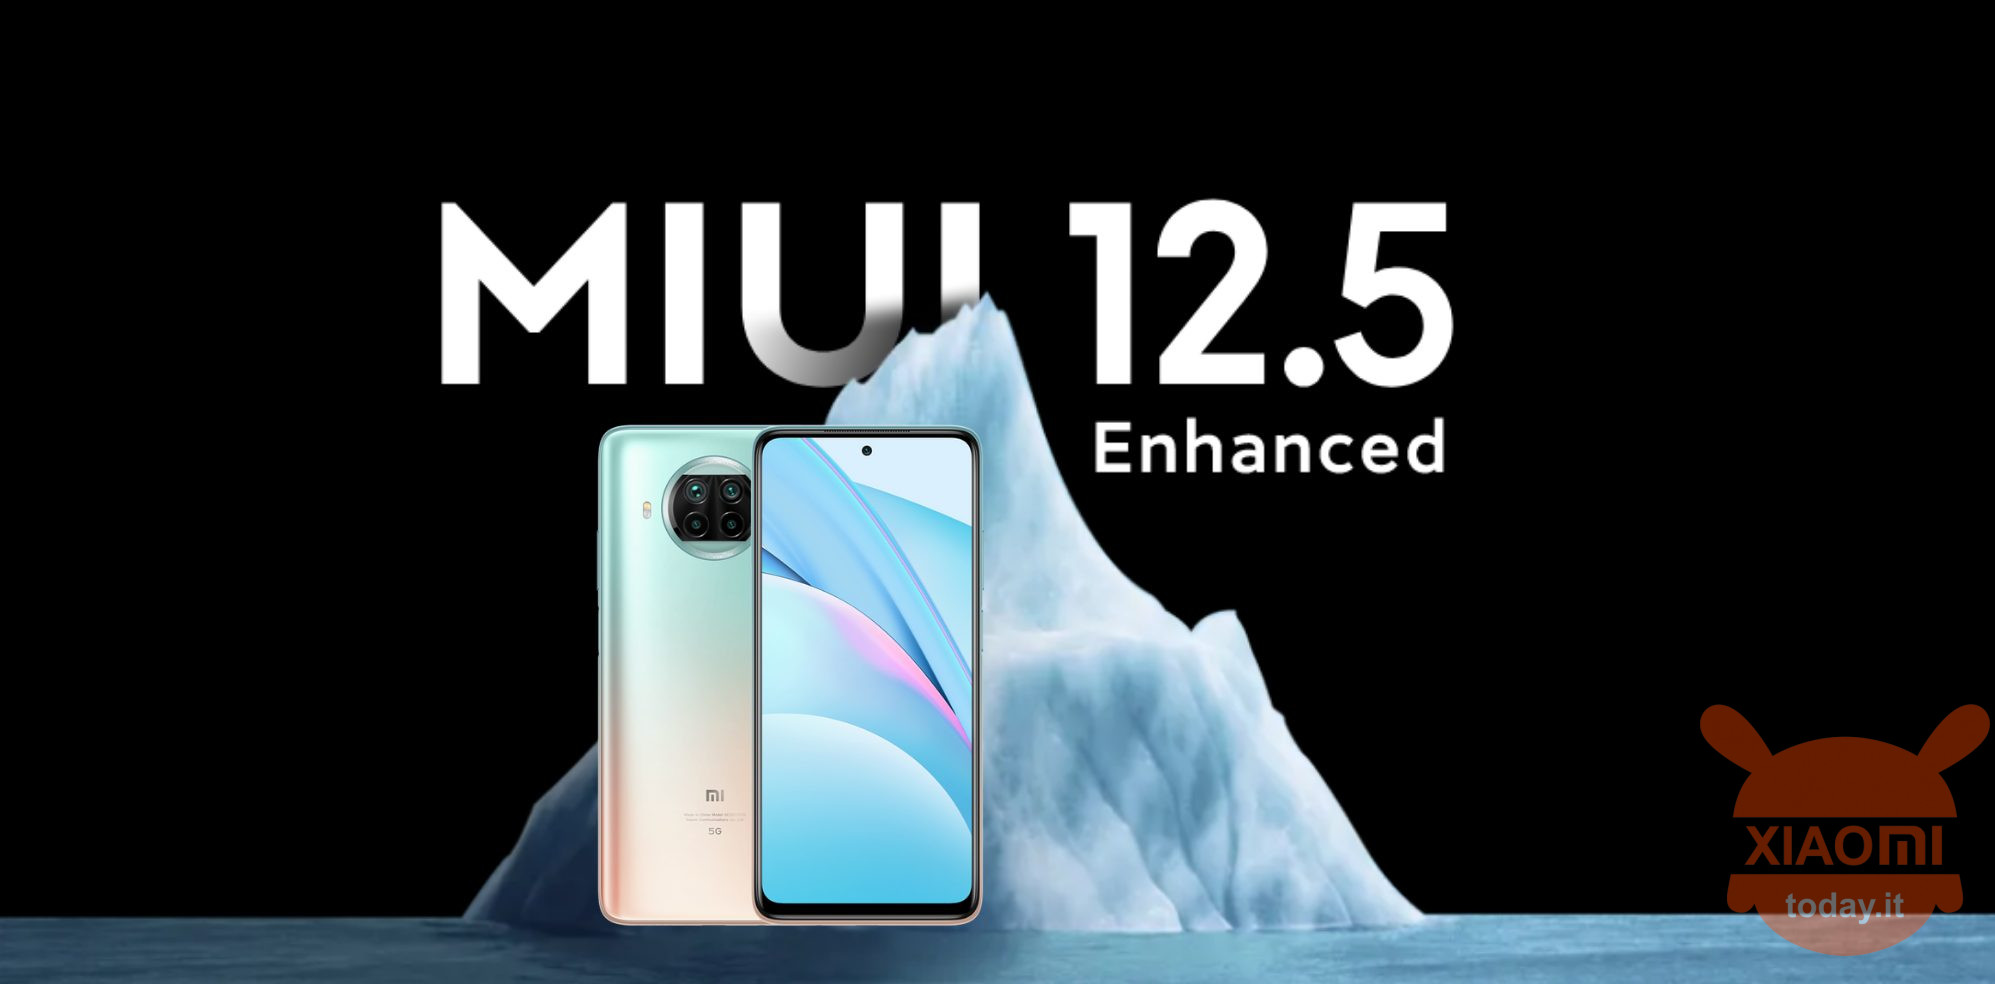 Xiaomi mi 10t lite को miui 12.5 एन्हांस्ड ग्लोबल में अपग्रेड किया गया है